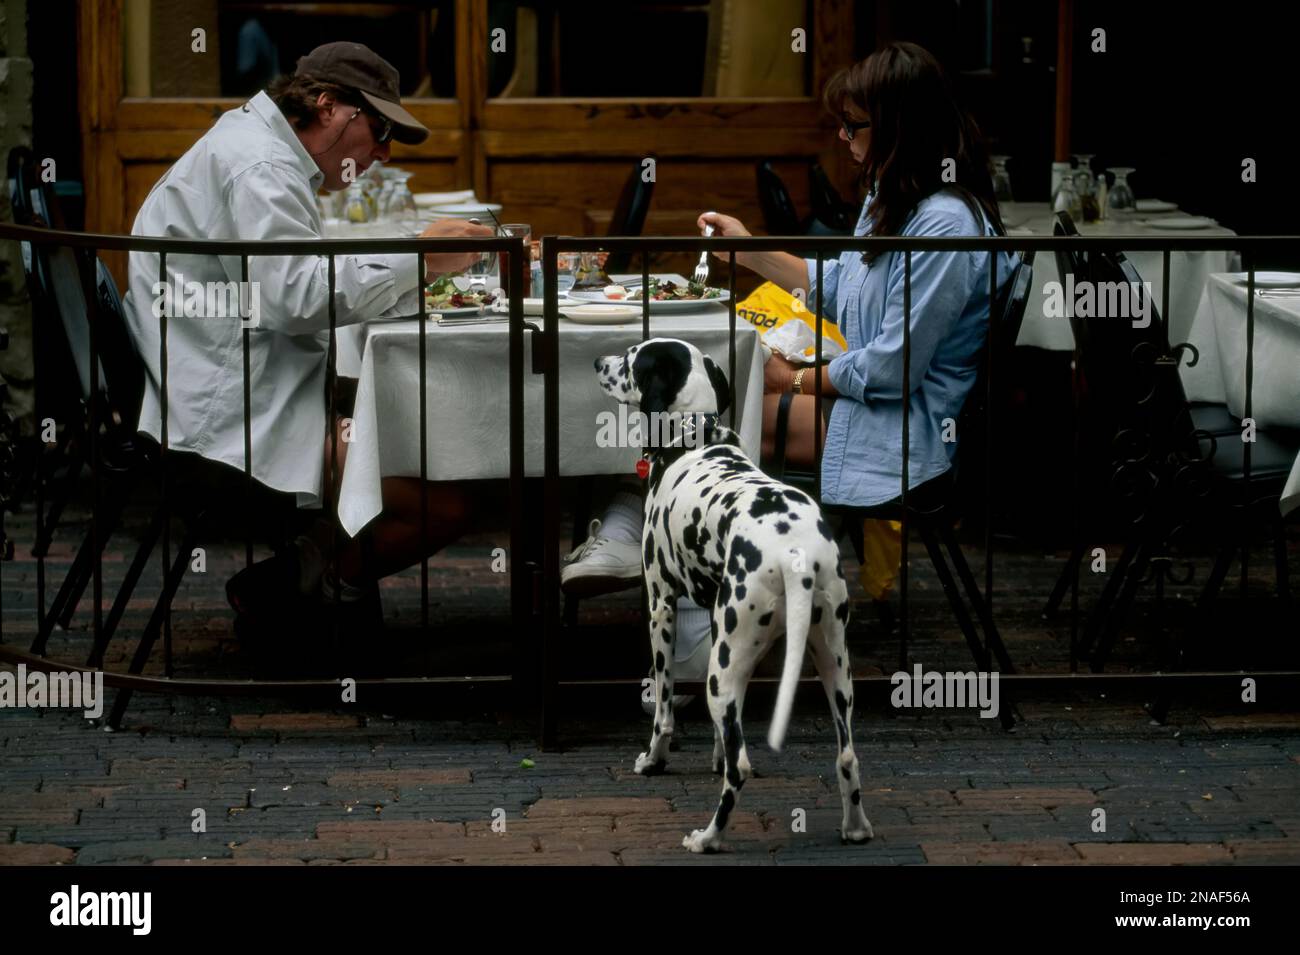 So süß dieser Dalmation-Hund auch ist, es scheint nicht so, als ob sein Betteln irgendein Essen von seinen Besitzern, die auf diesem Aspen, Colorado, Gehweg ..., essen lassen würde Stockfoto